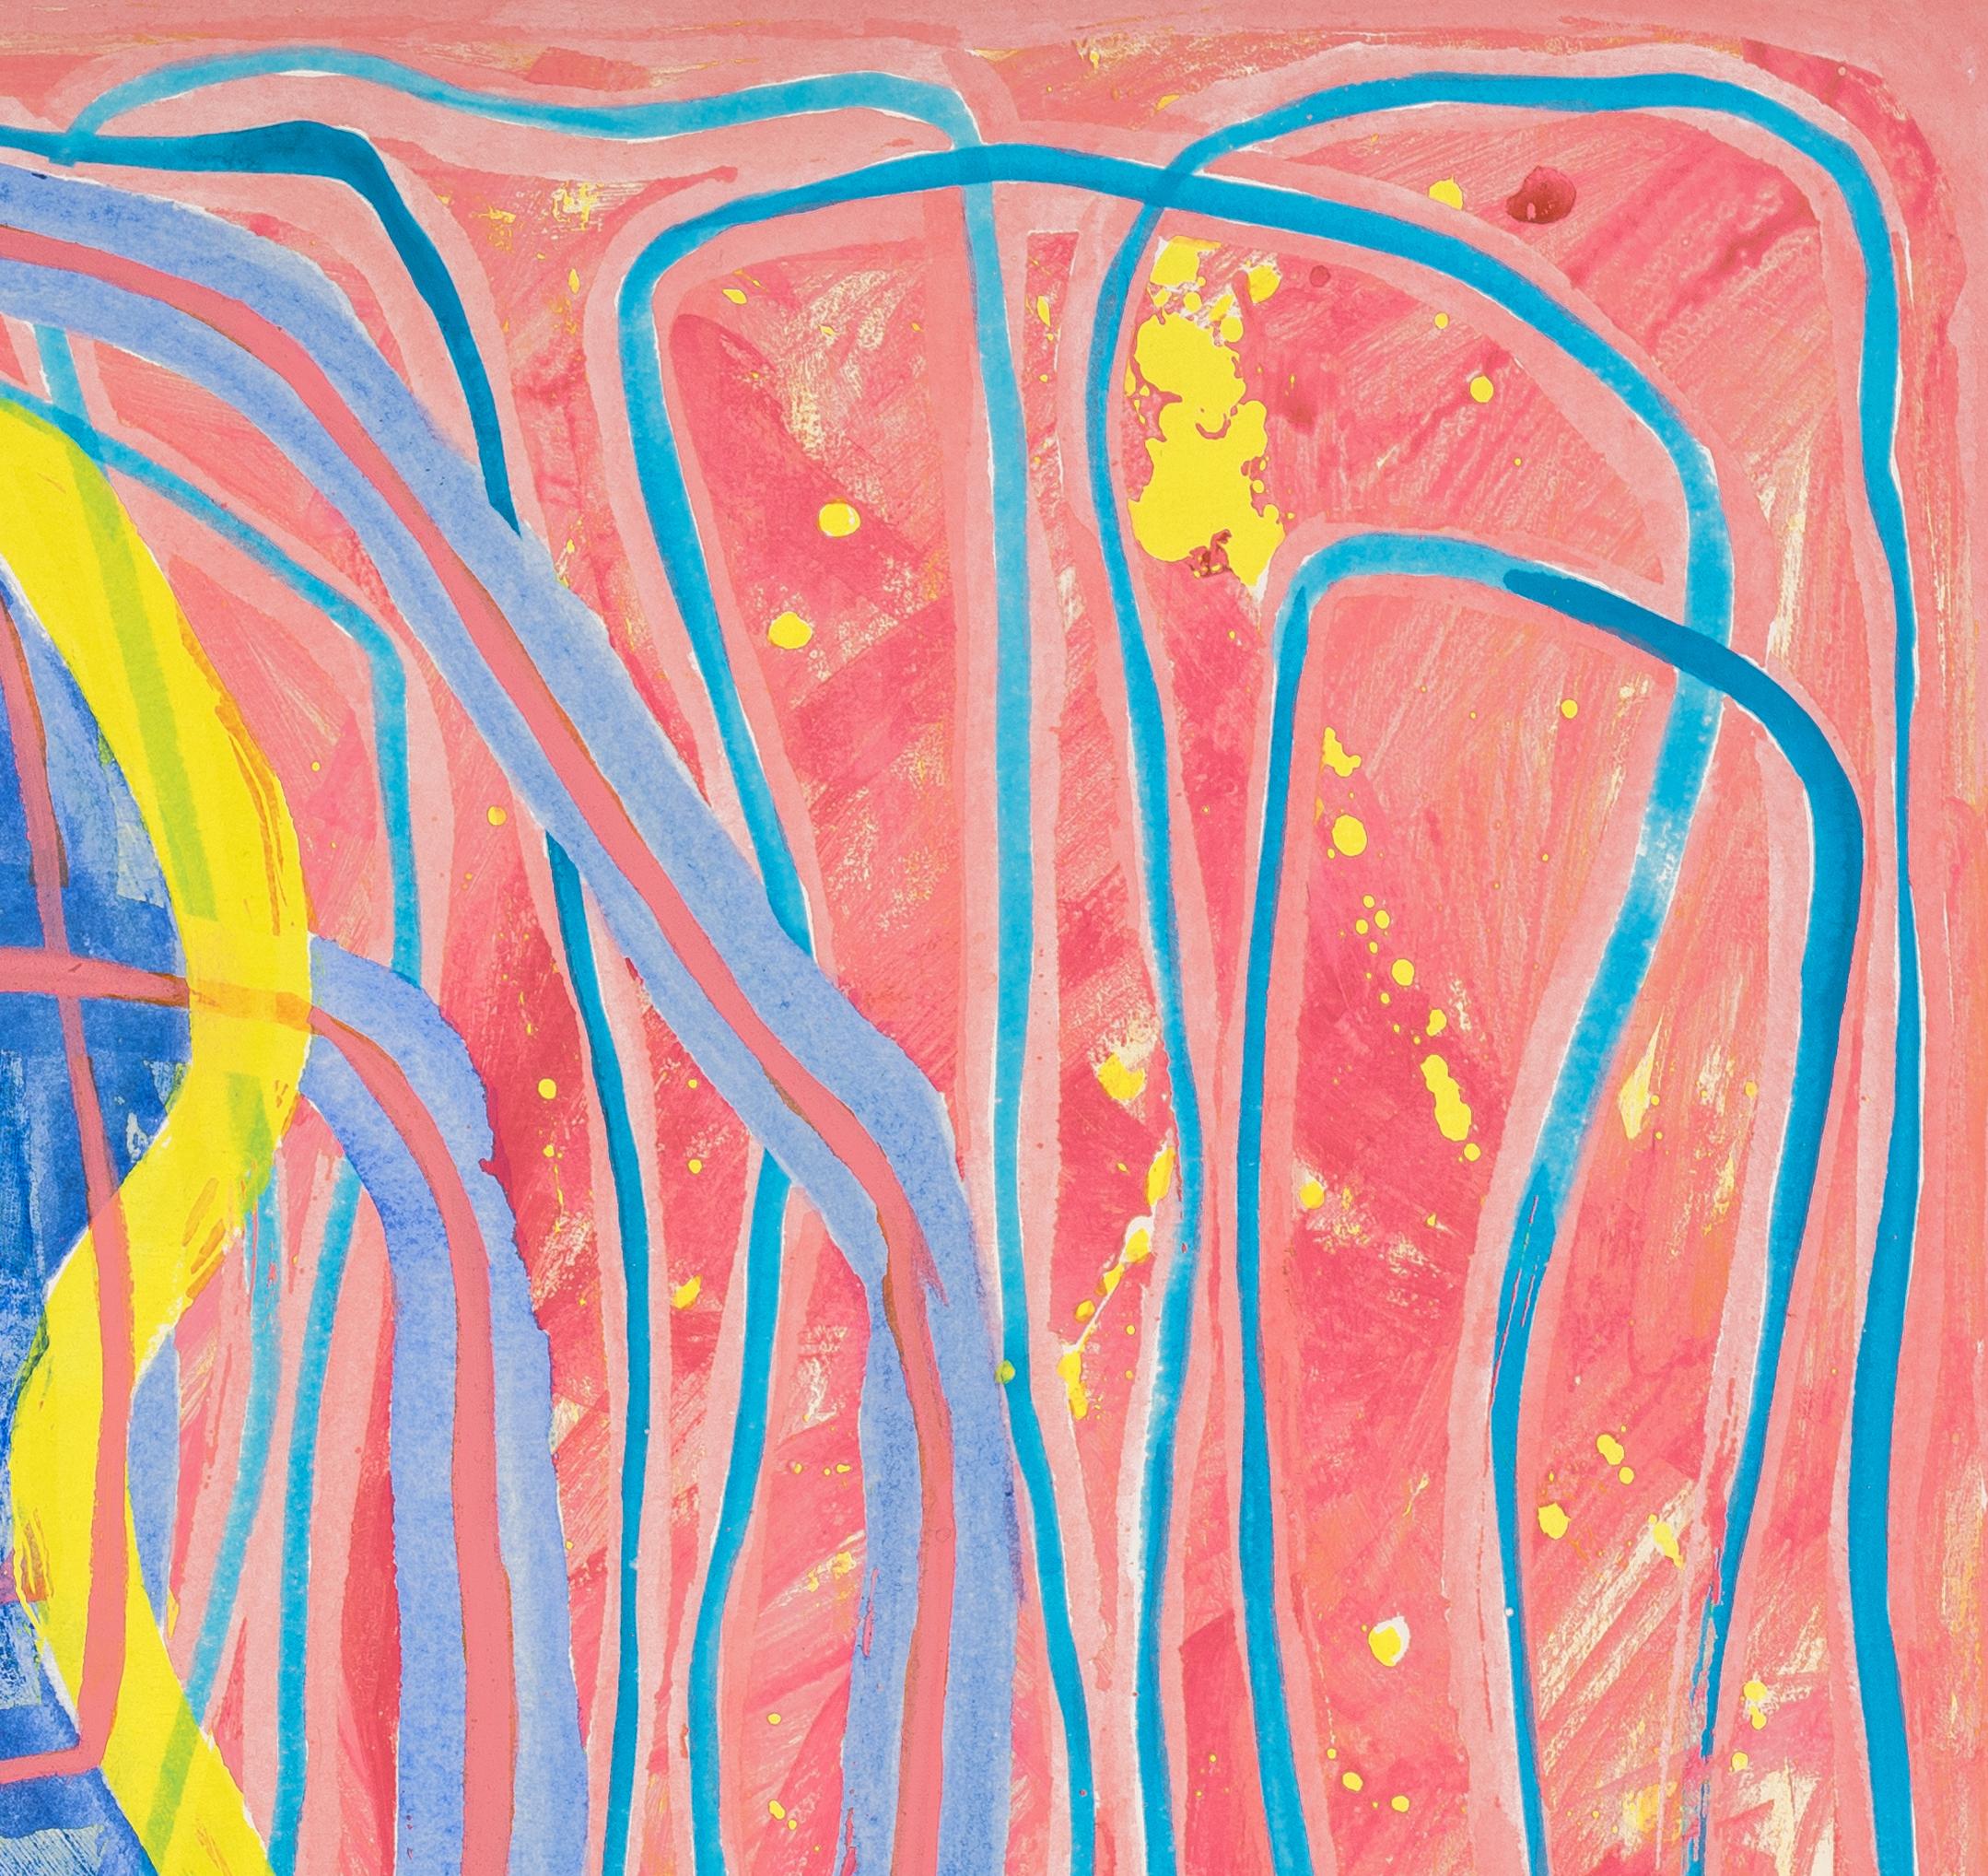 0103 : peinture gestuelle abstraite contemporaine avec des lignes jaunes, roses et bleues - Painting de Paula Cahill